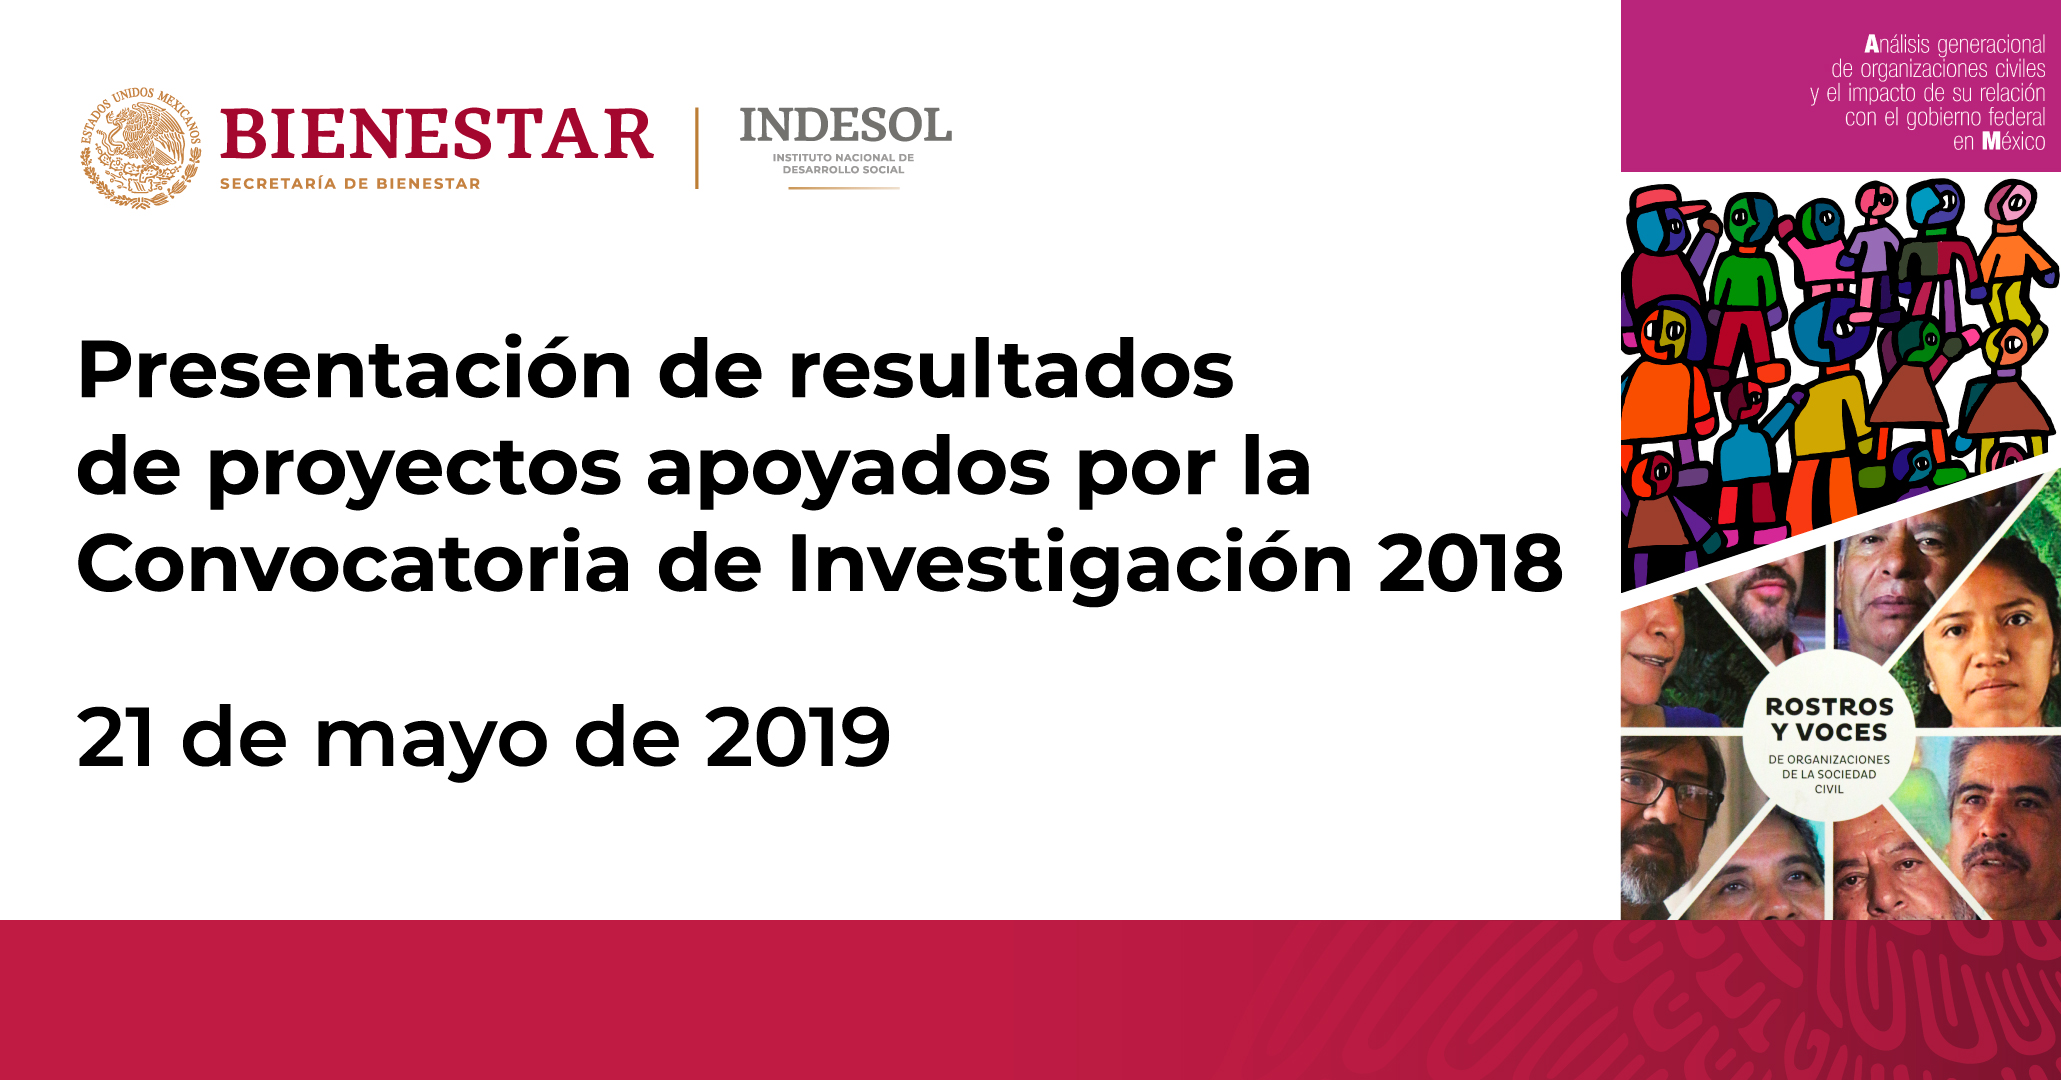 Invitación del Indesol a la Presentación de resultados de proyectos apoyados por la Convocatoria de Investigación 2018